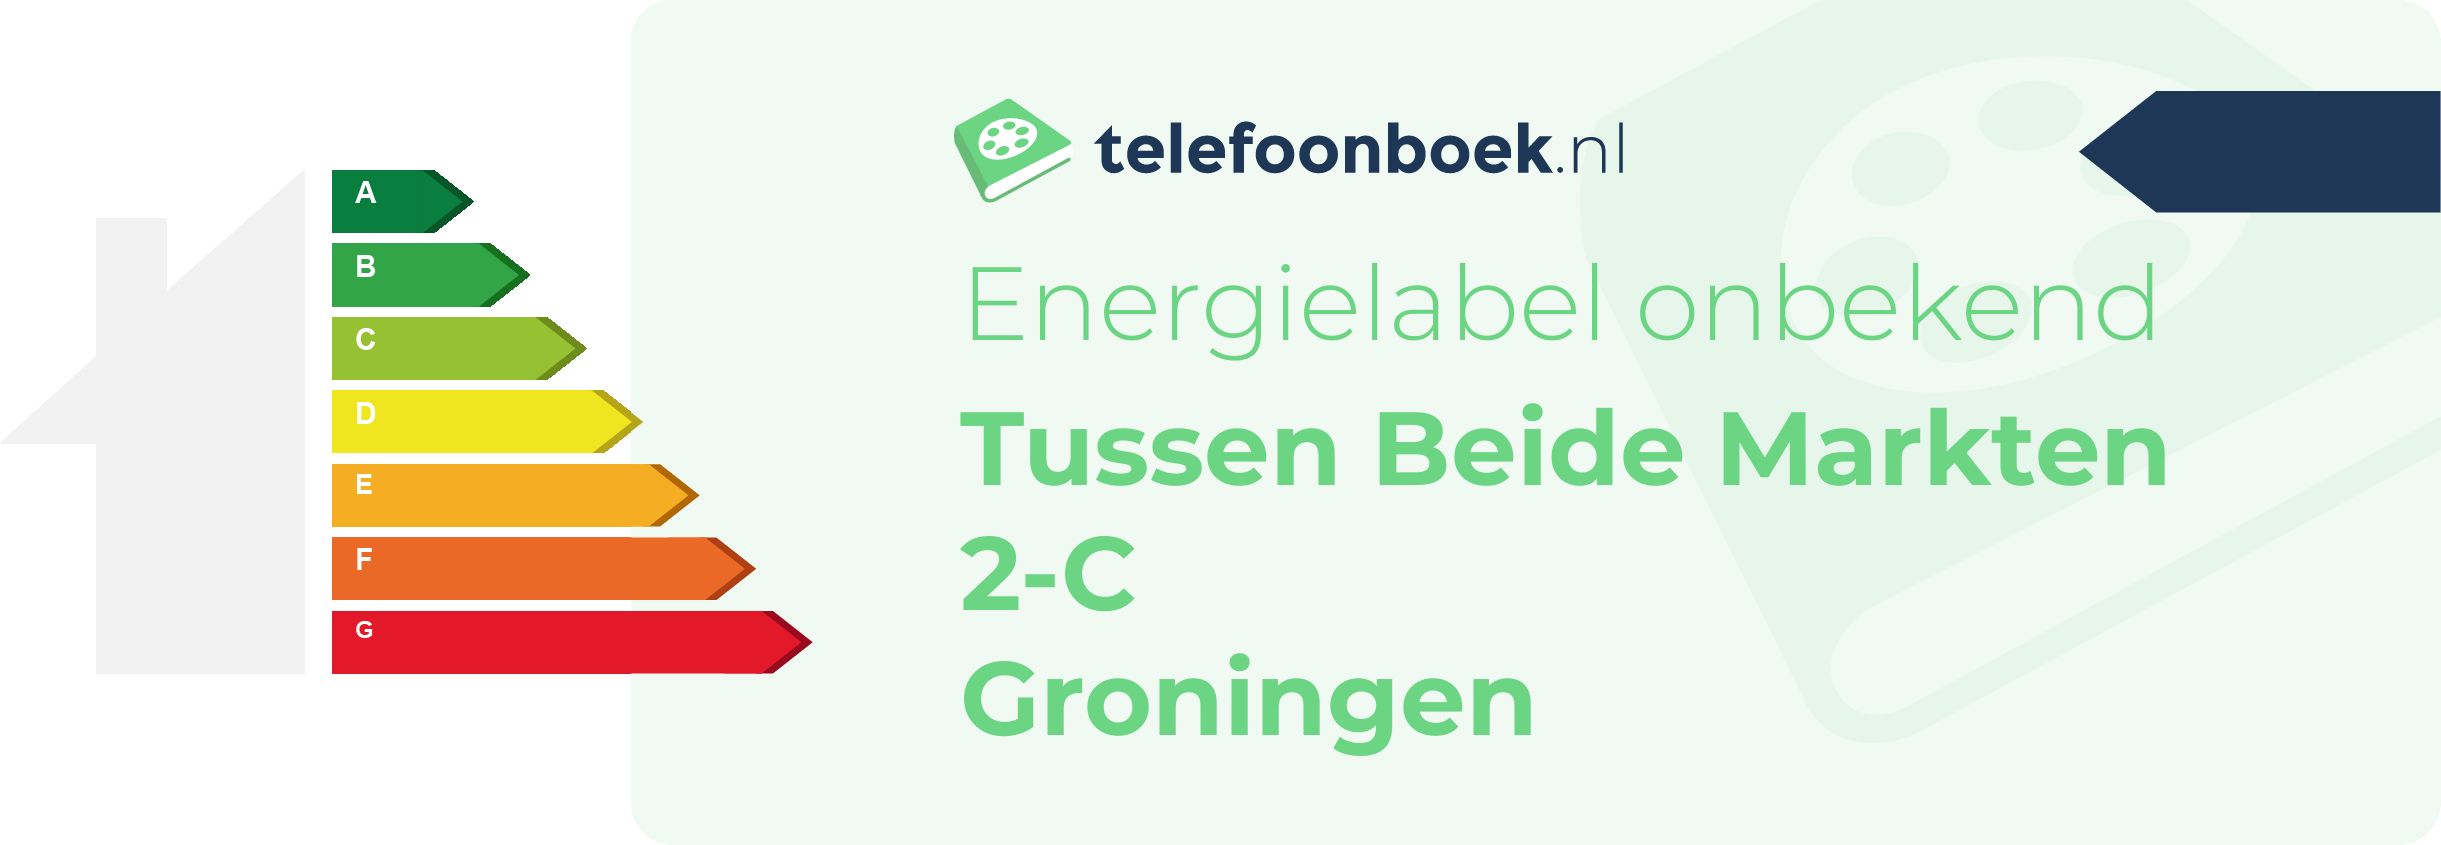 Energielabel Tussen Beide Markten 2-C Groningen